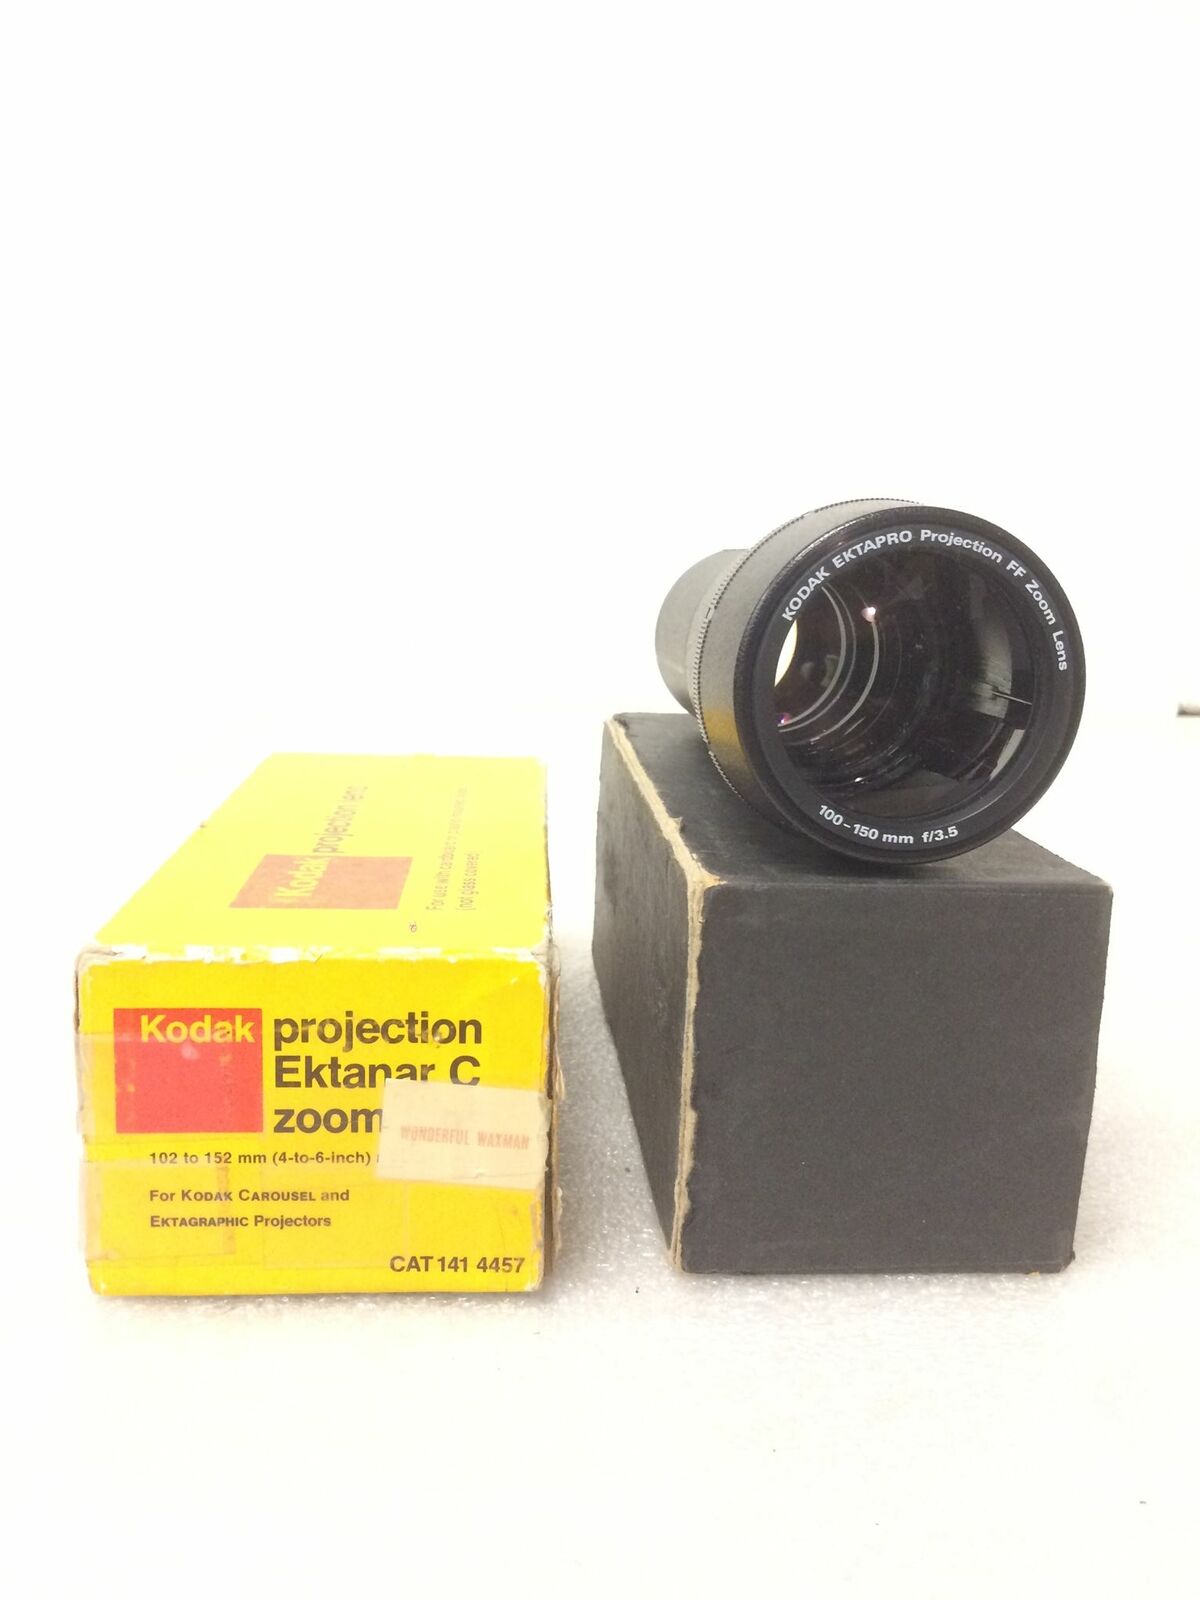 Kodak Ektanar C Zoom Projection Lens 100 To 150 Mm F/3.5 Lumenized 141 4457